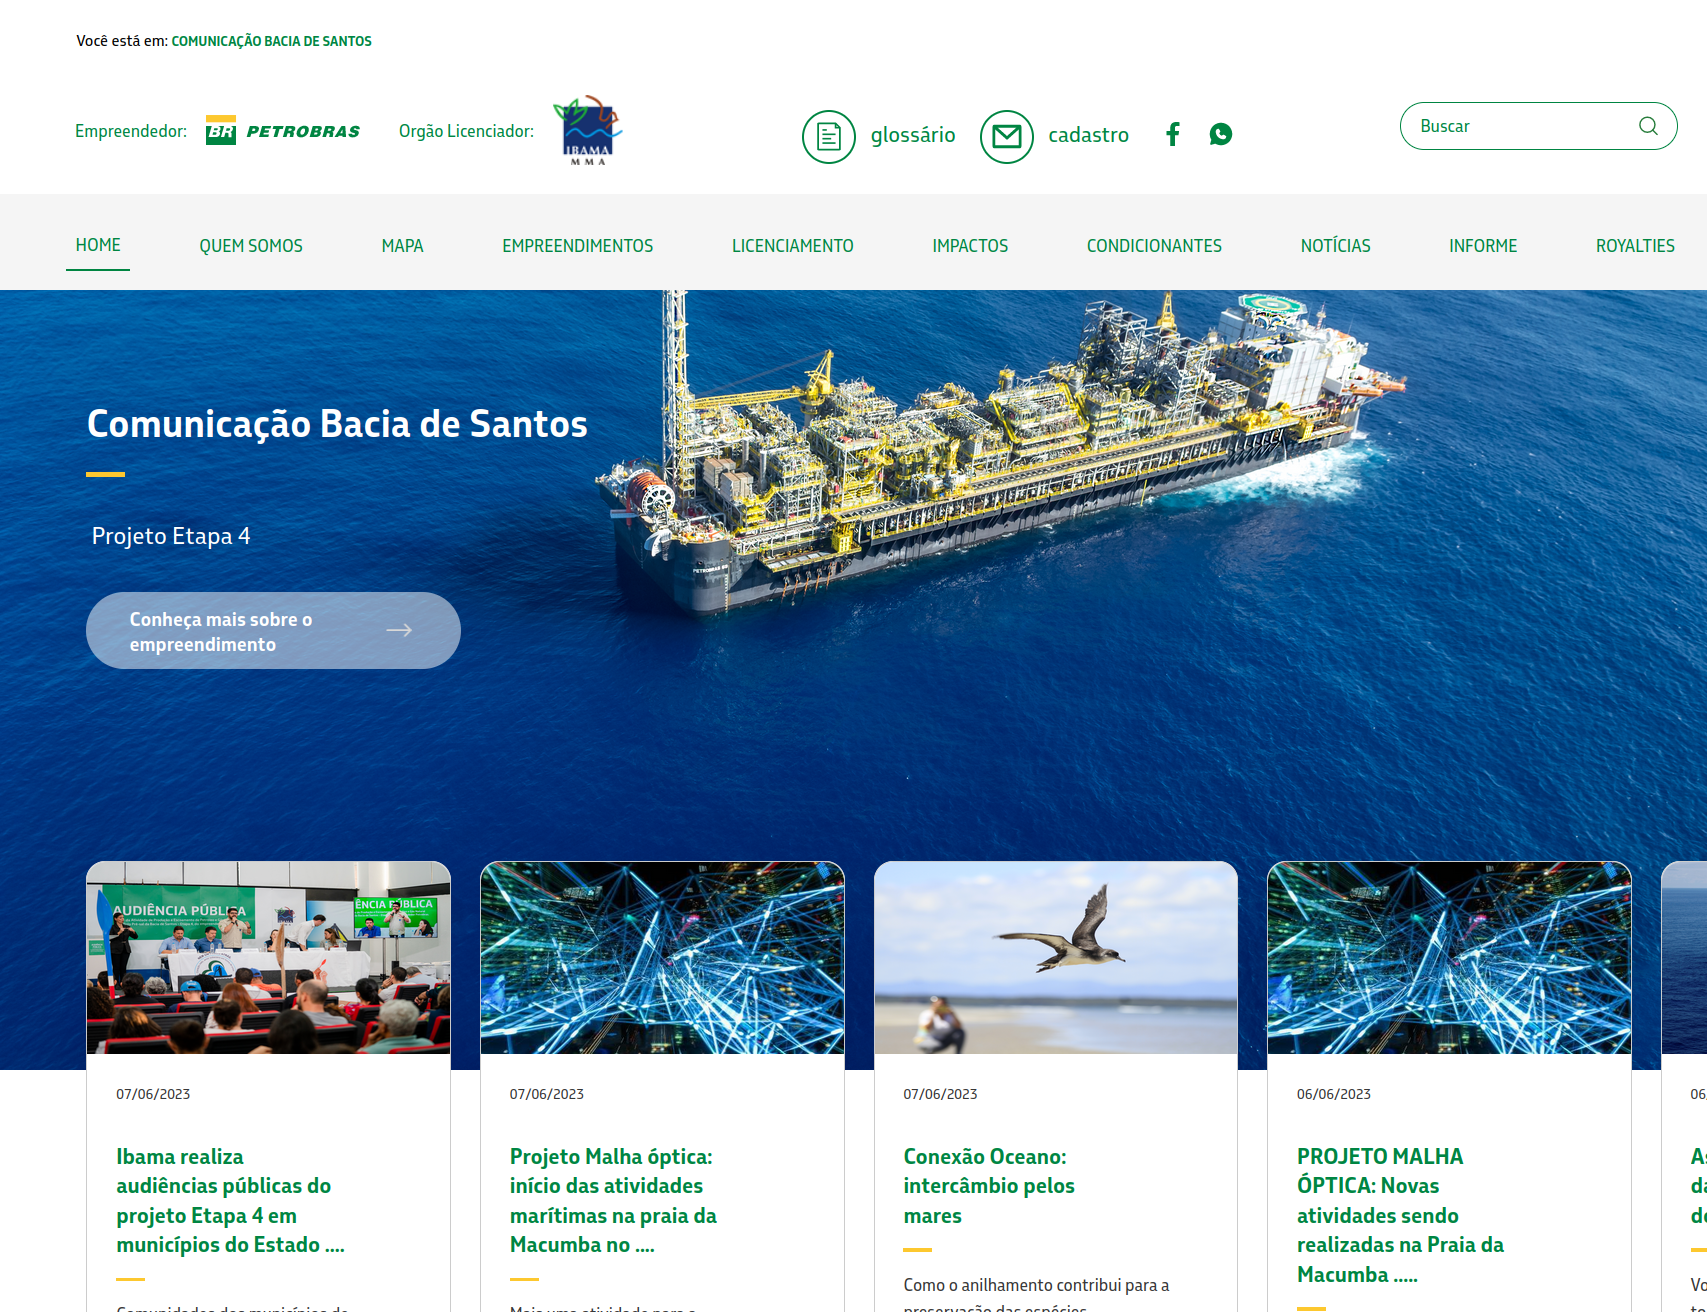 Visualização do site Comunicação Bacisa de Santos da Petrobras